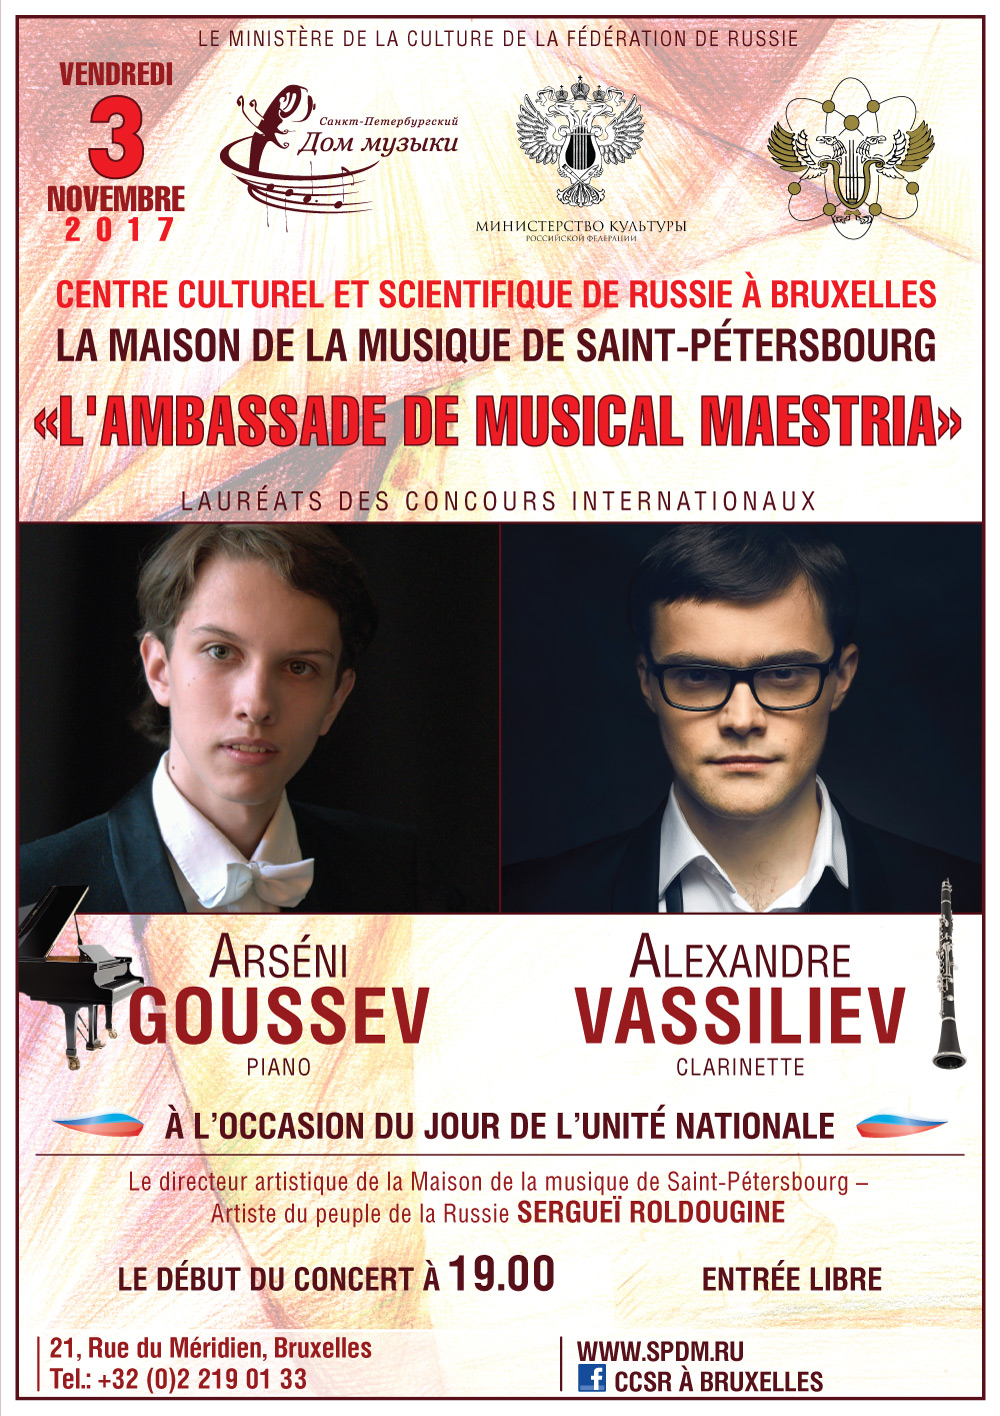 Посольство мастерства. L'Ambassade de musical maestria.